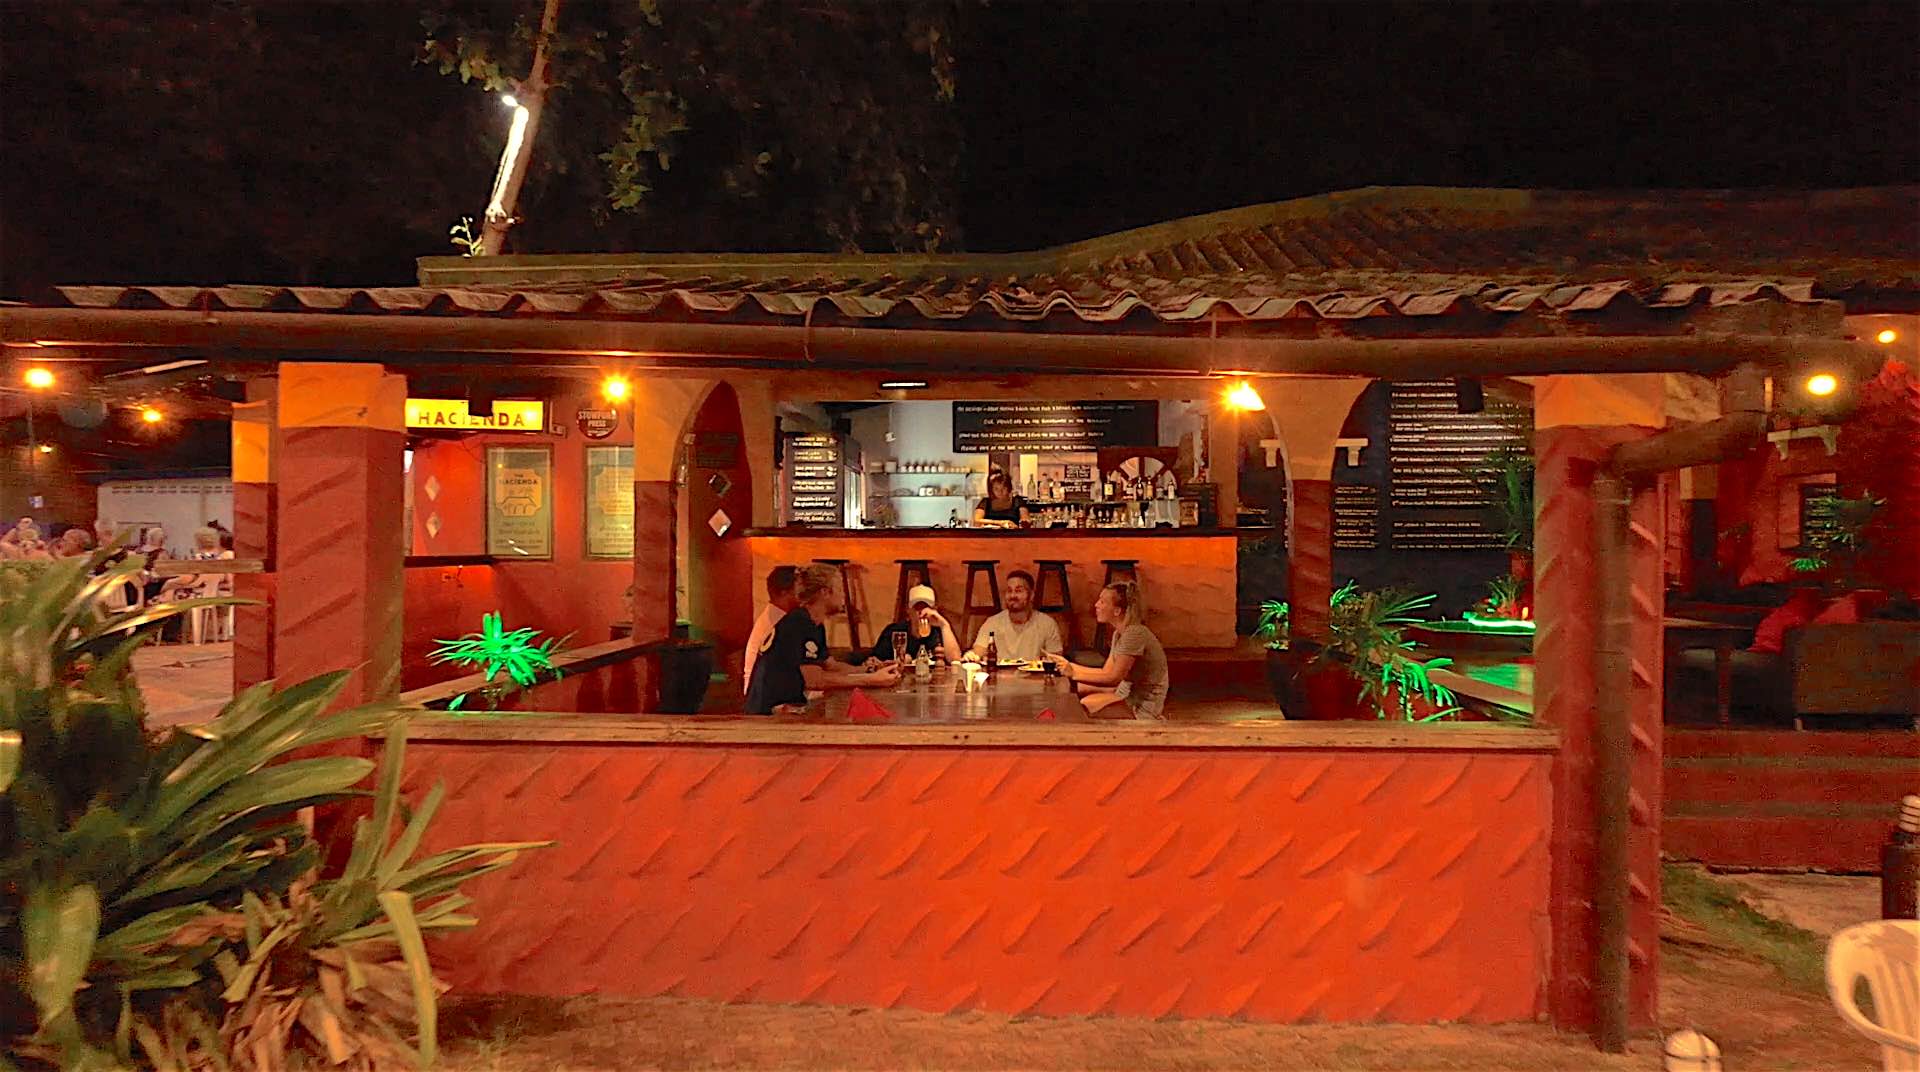 www.thefunkyturtle.com hacienda bar and grill restaurant